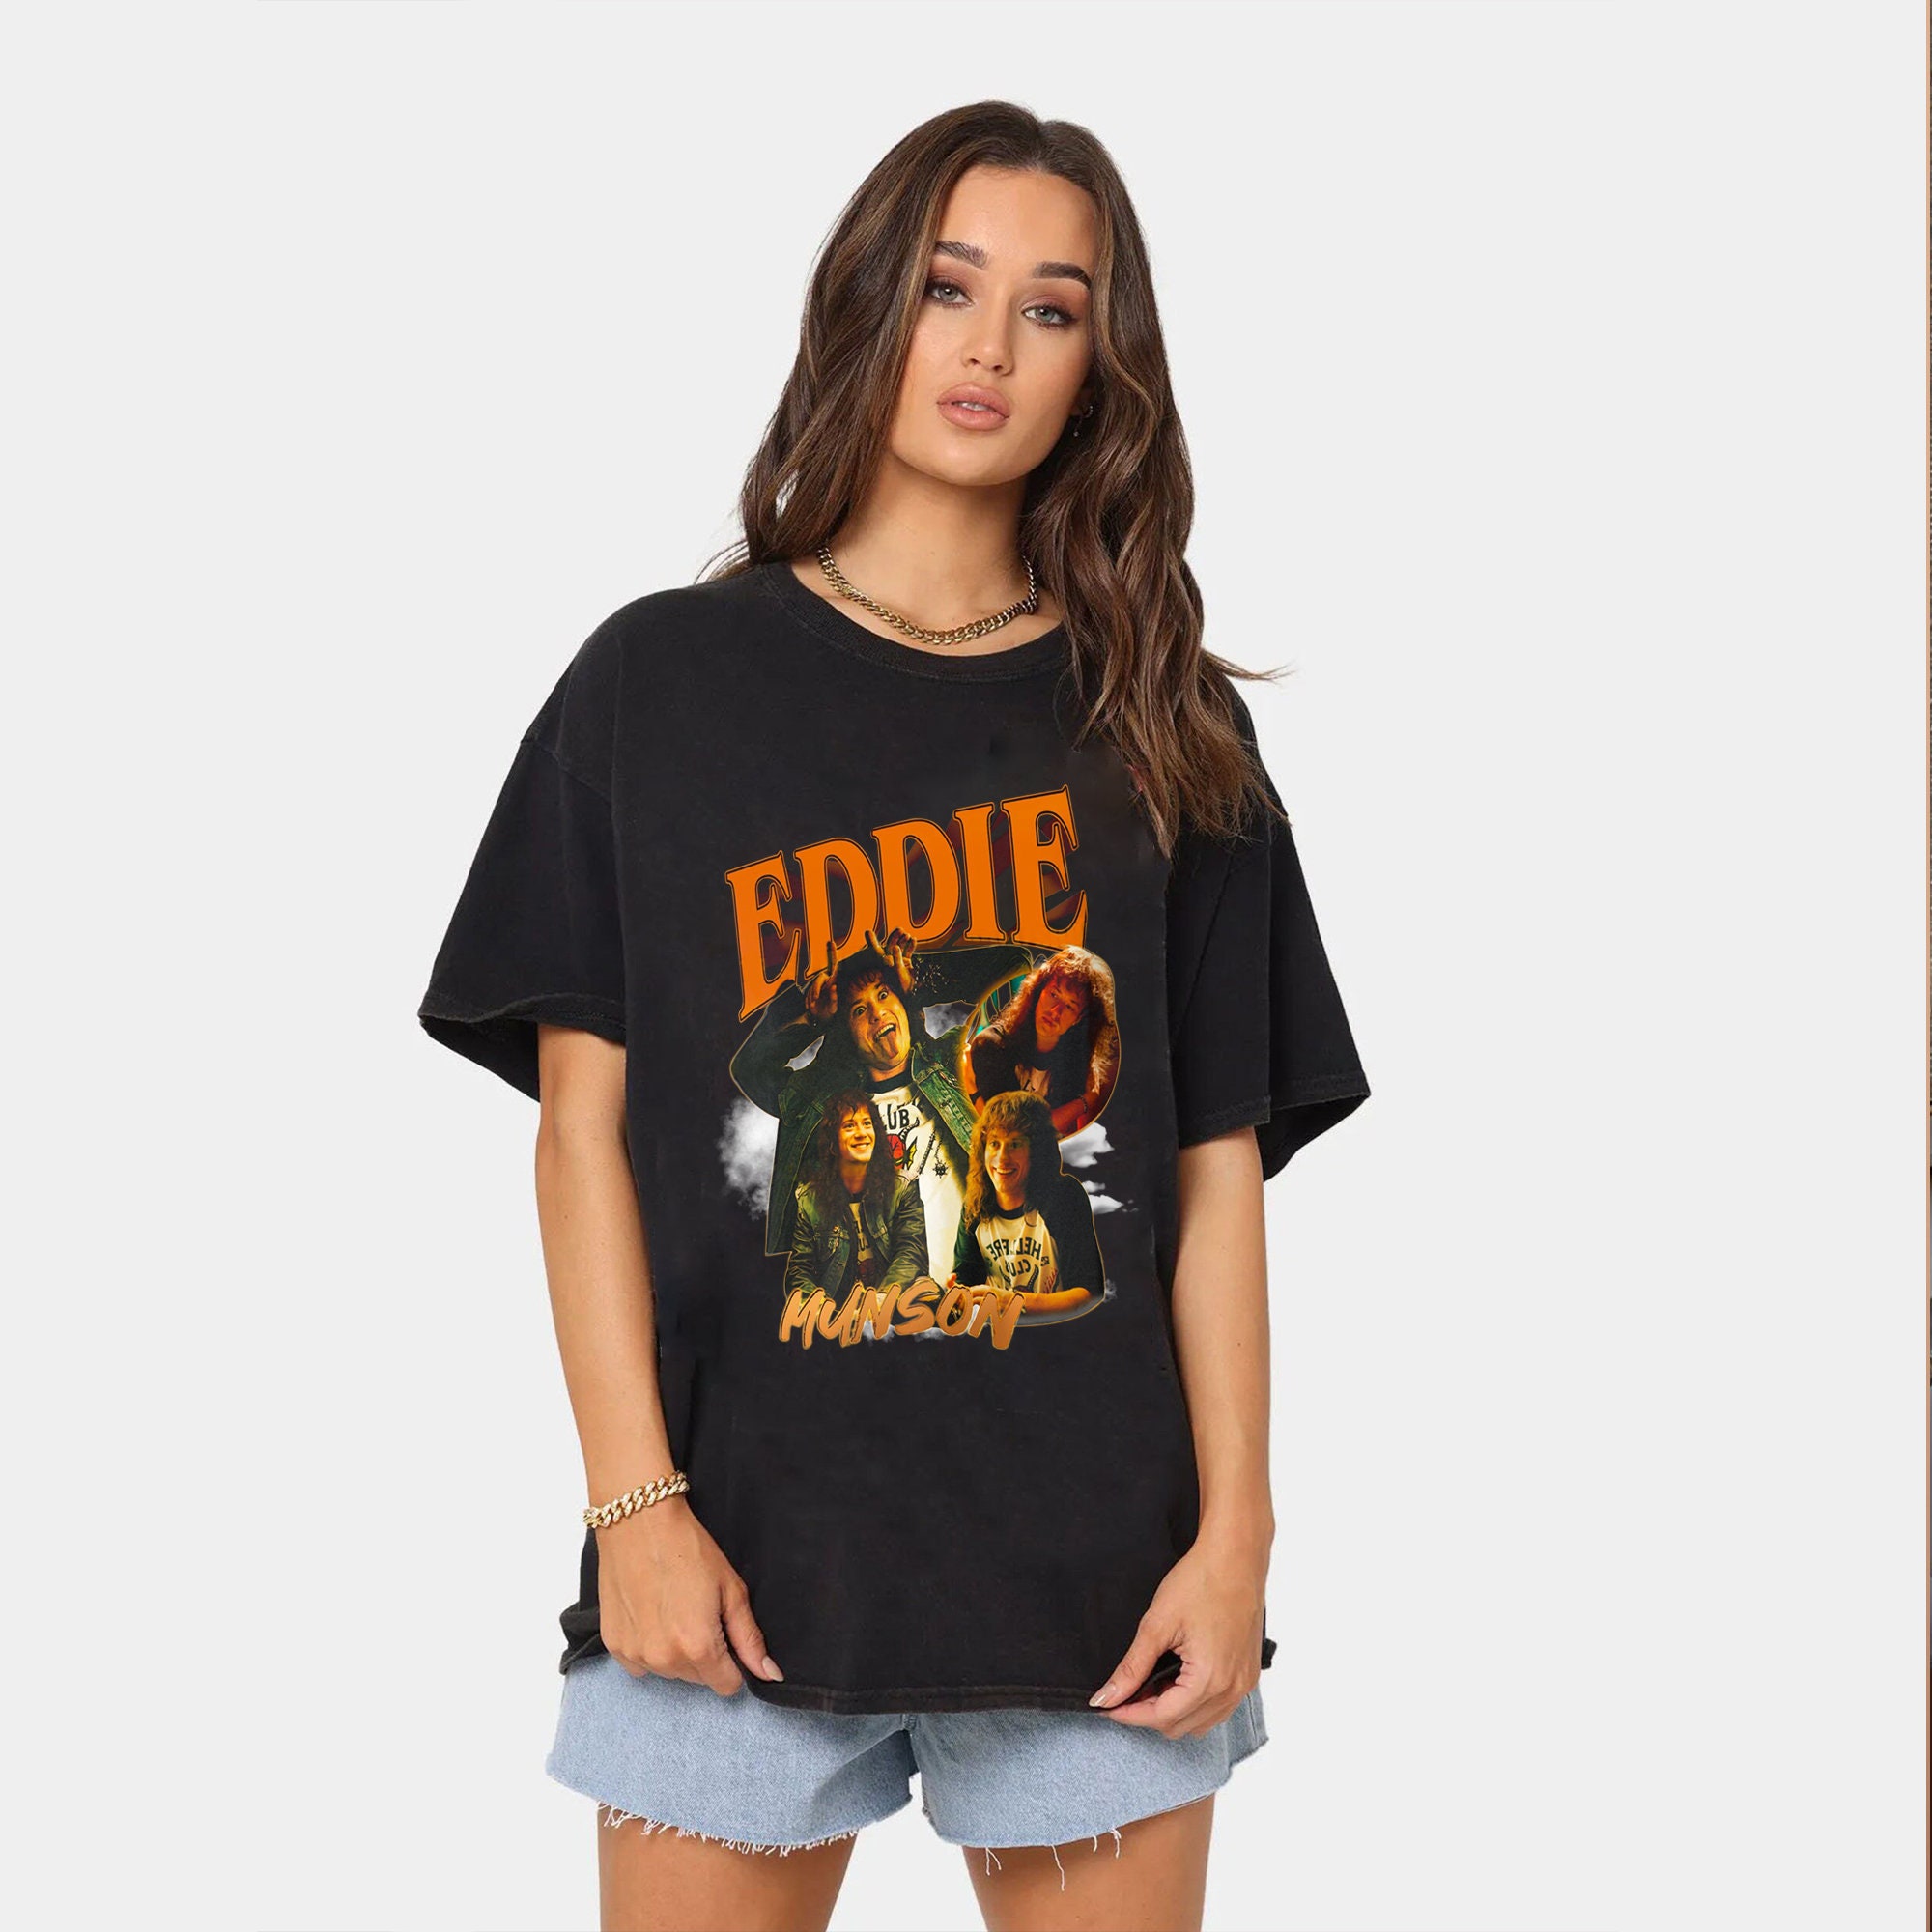 Discover Eddie Munson T Shirt, Eddie Vintage T-Shirt